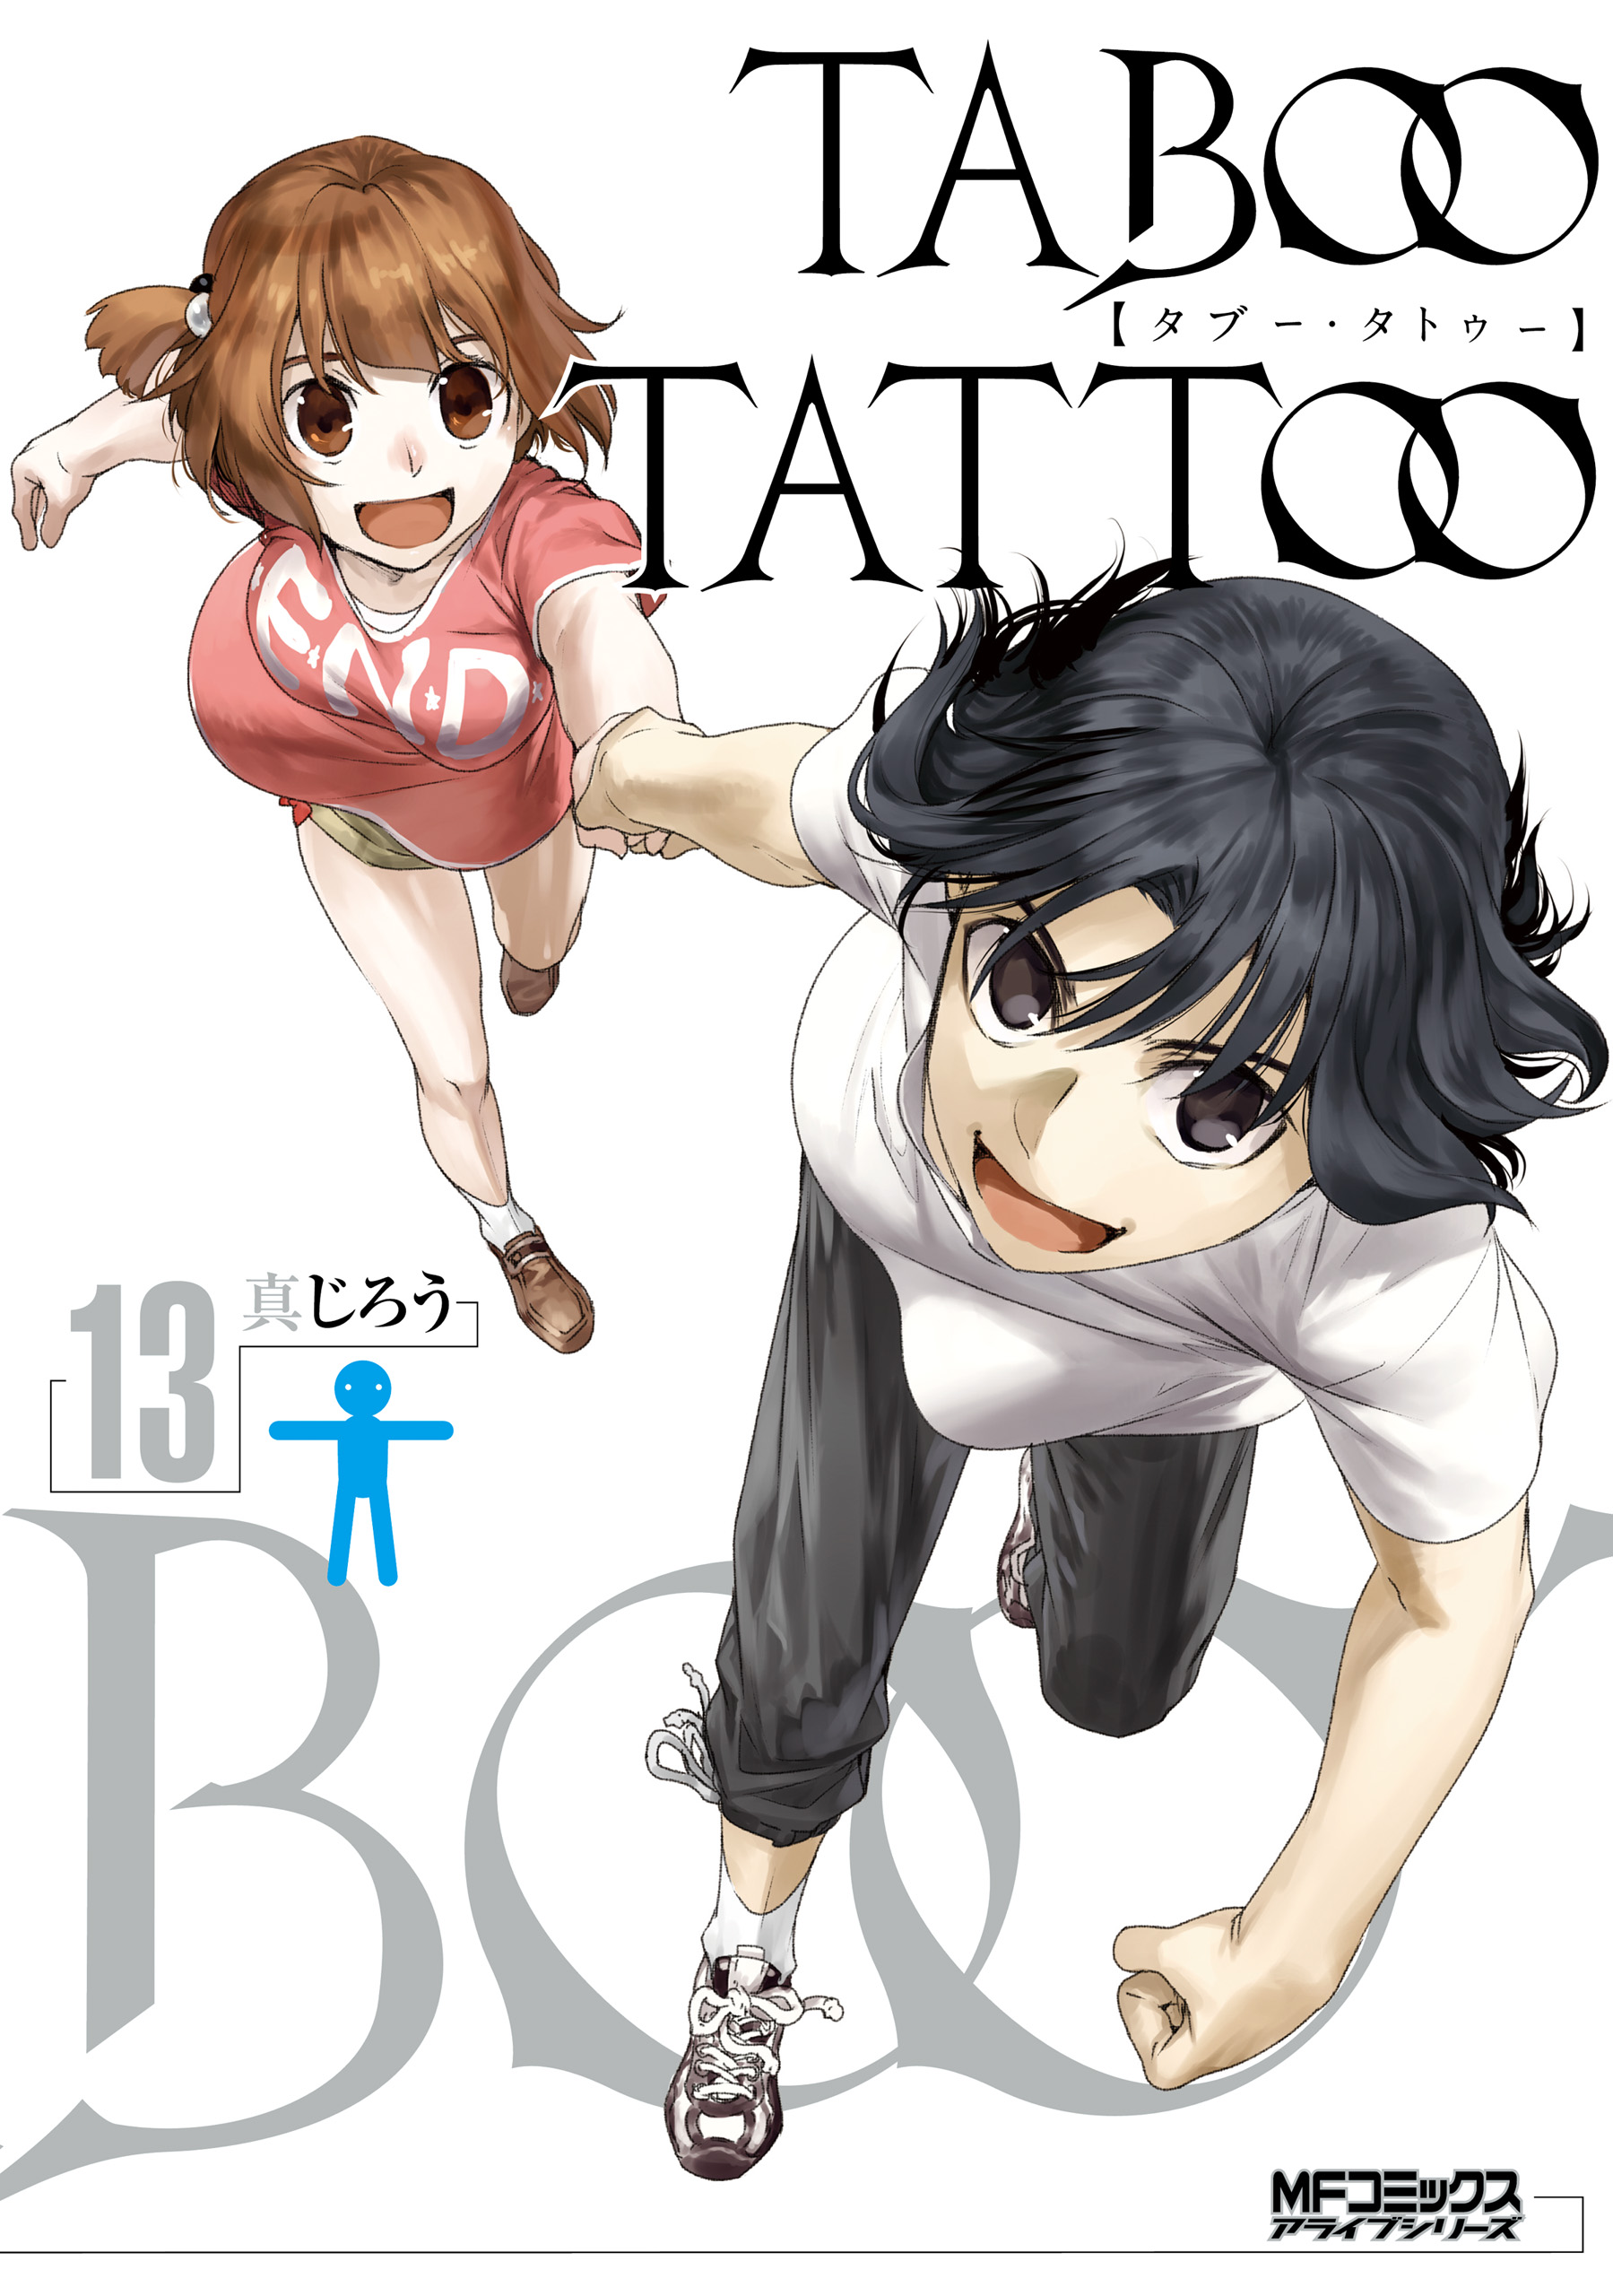 Taboo Tattoo Vol 1  Manga Review  Taykobon